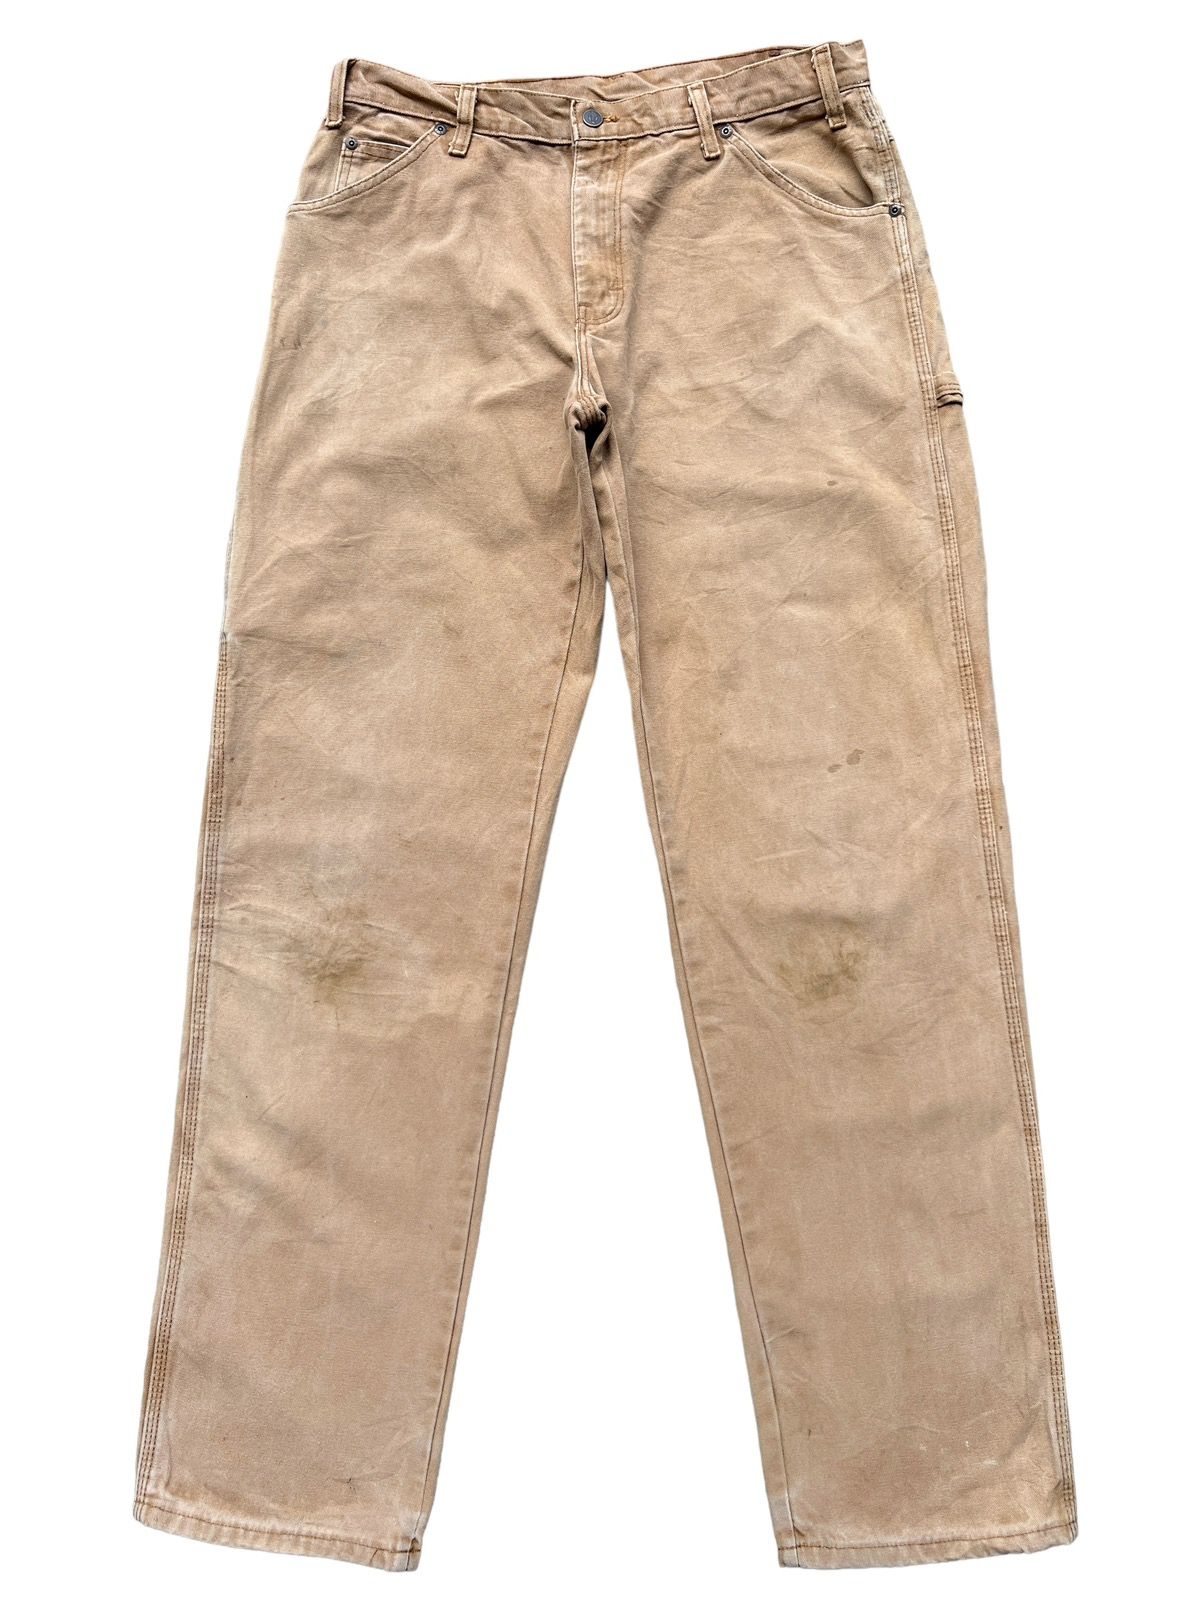 Vintage 90s Dickies Workwear Faded Distressed Baggy Pants - 2